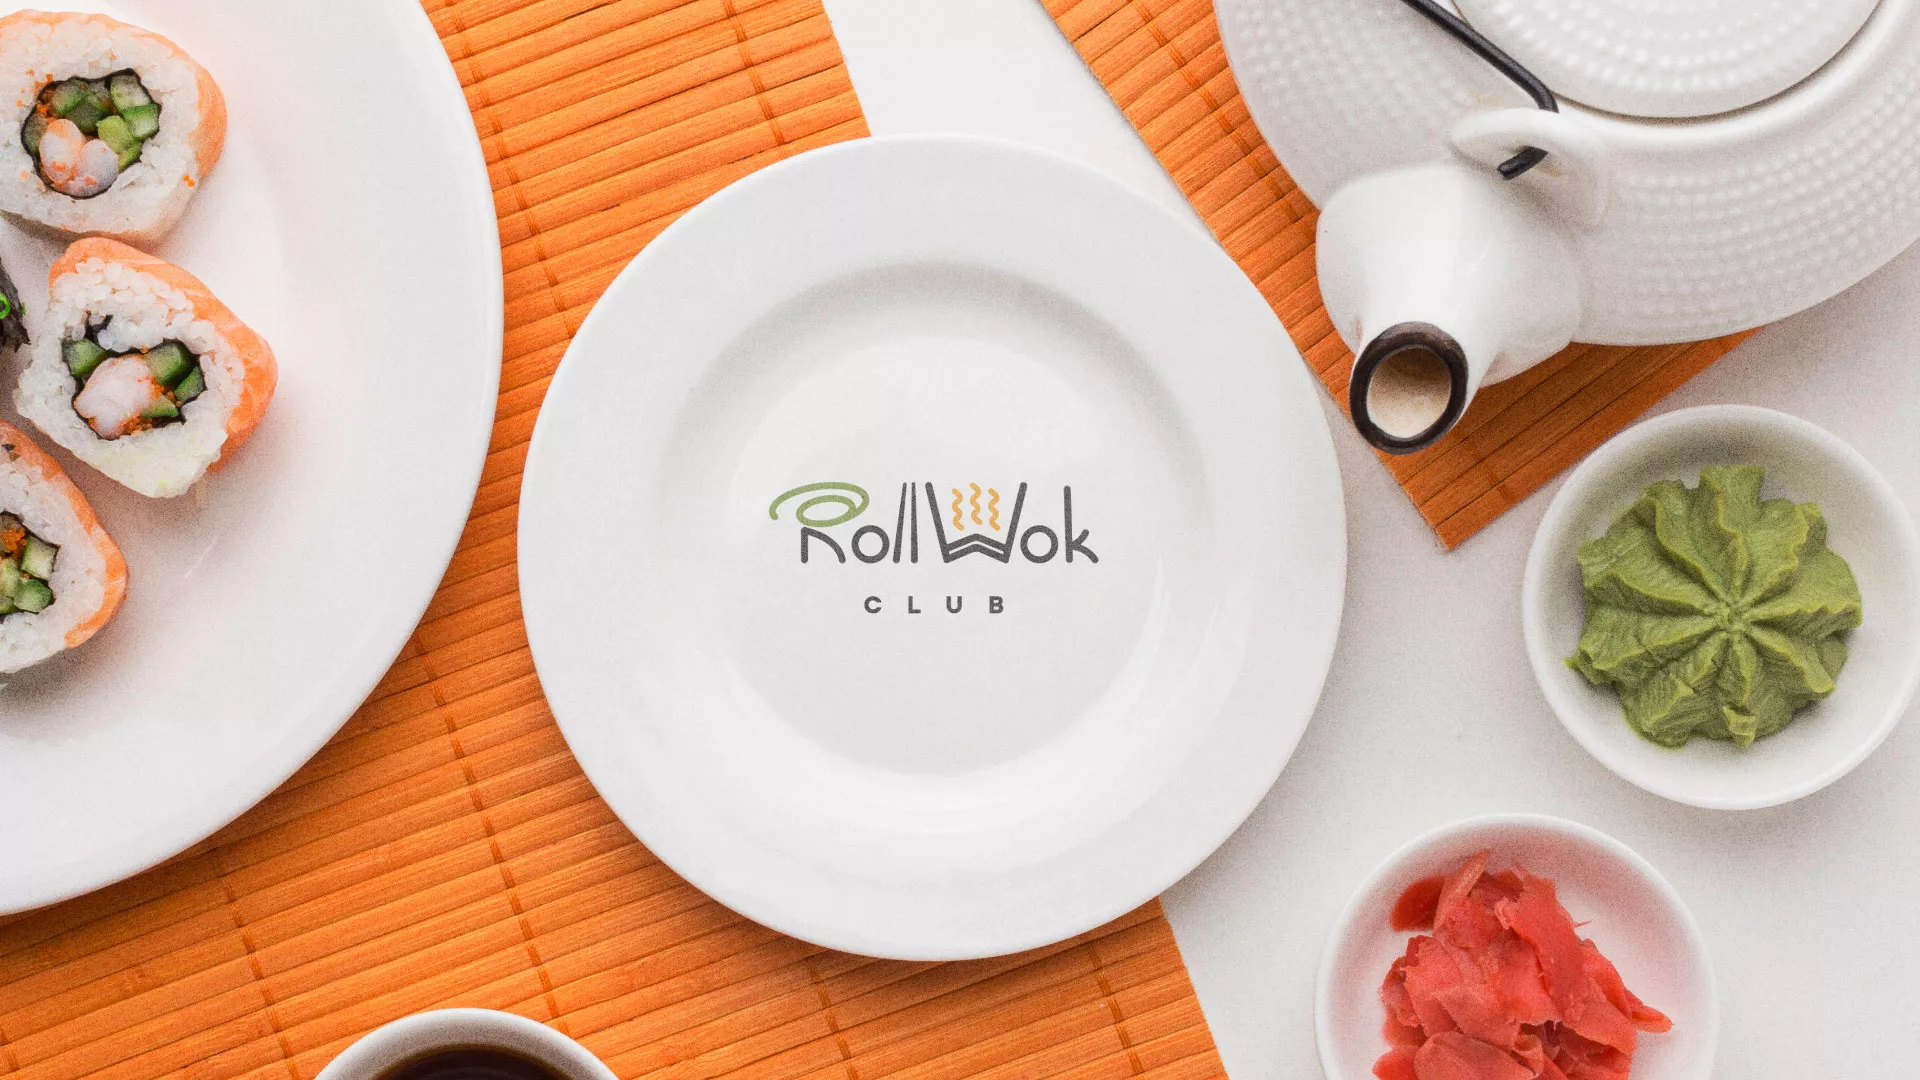 Разработка логотипа и фирменного стиля суши-бара «Roll Wok Club» в Новопавловске